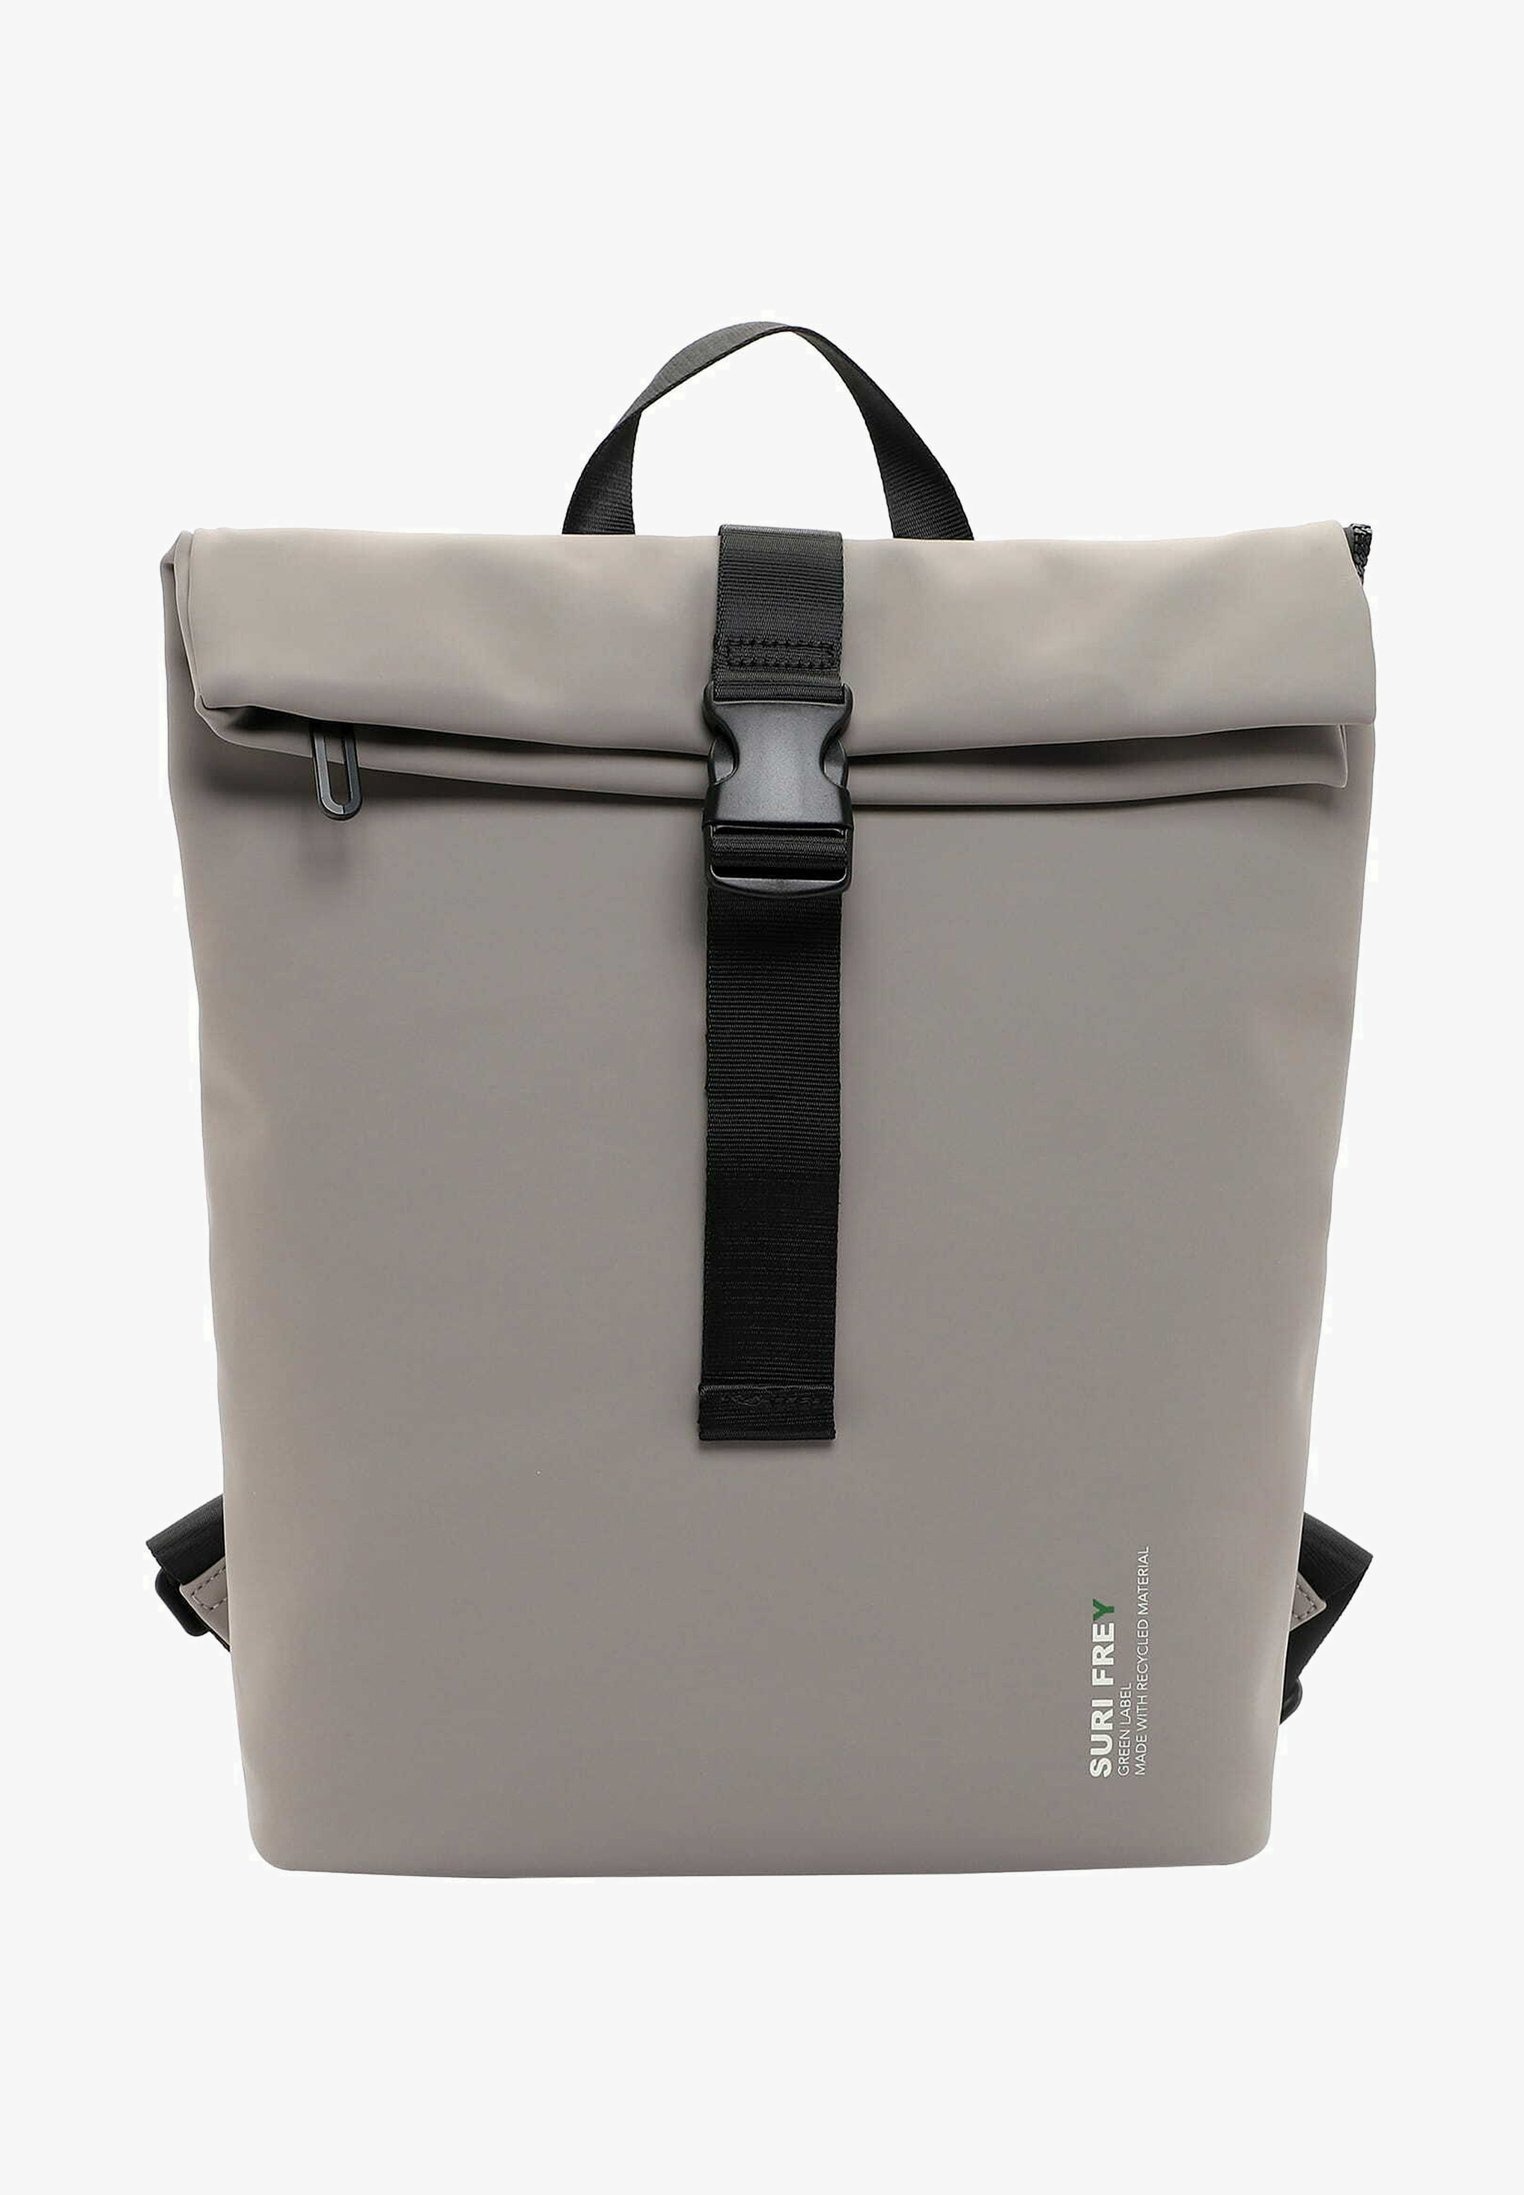 Рюкзак для путешествий Suri Frey Label, серо-бежевый